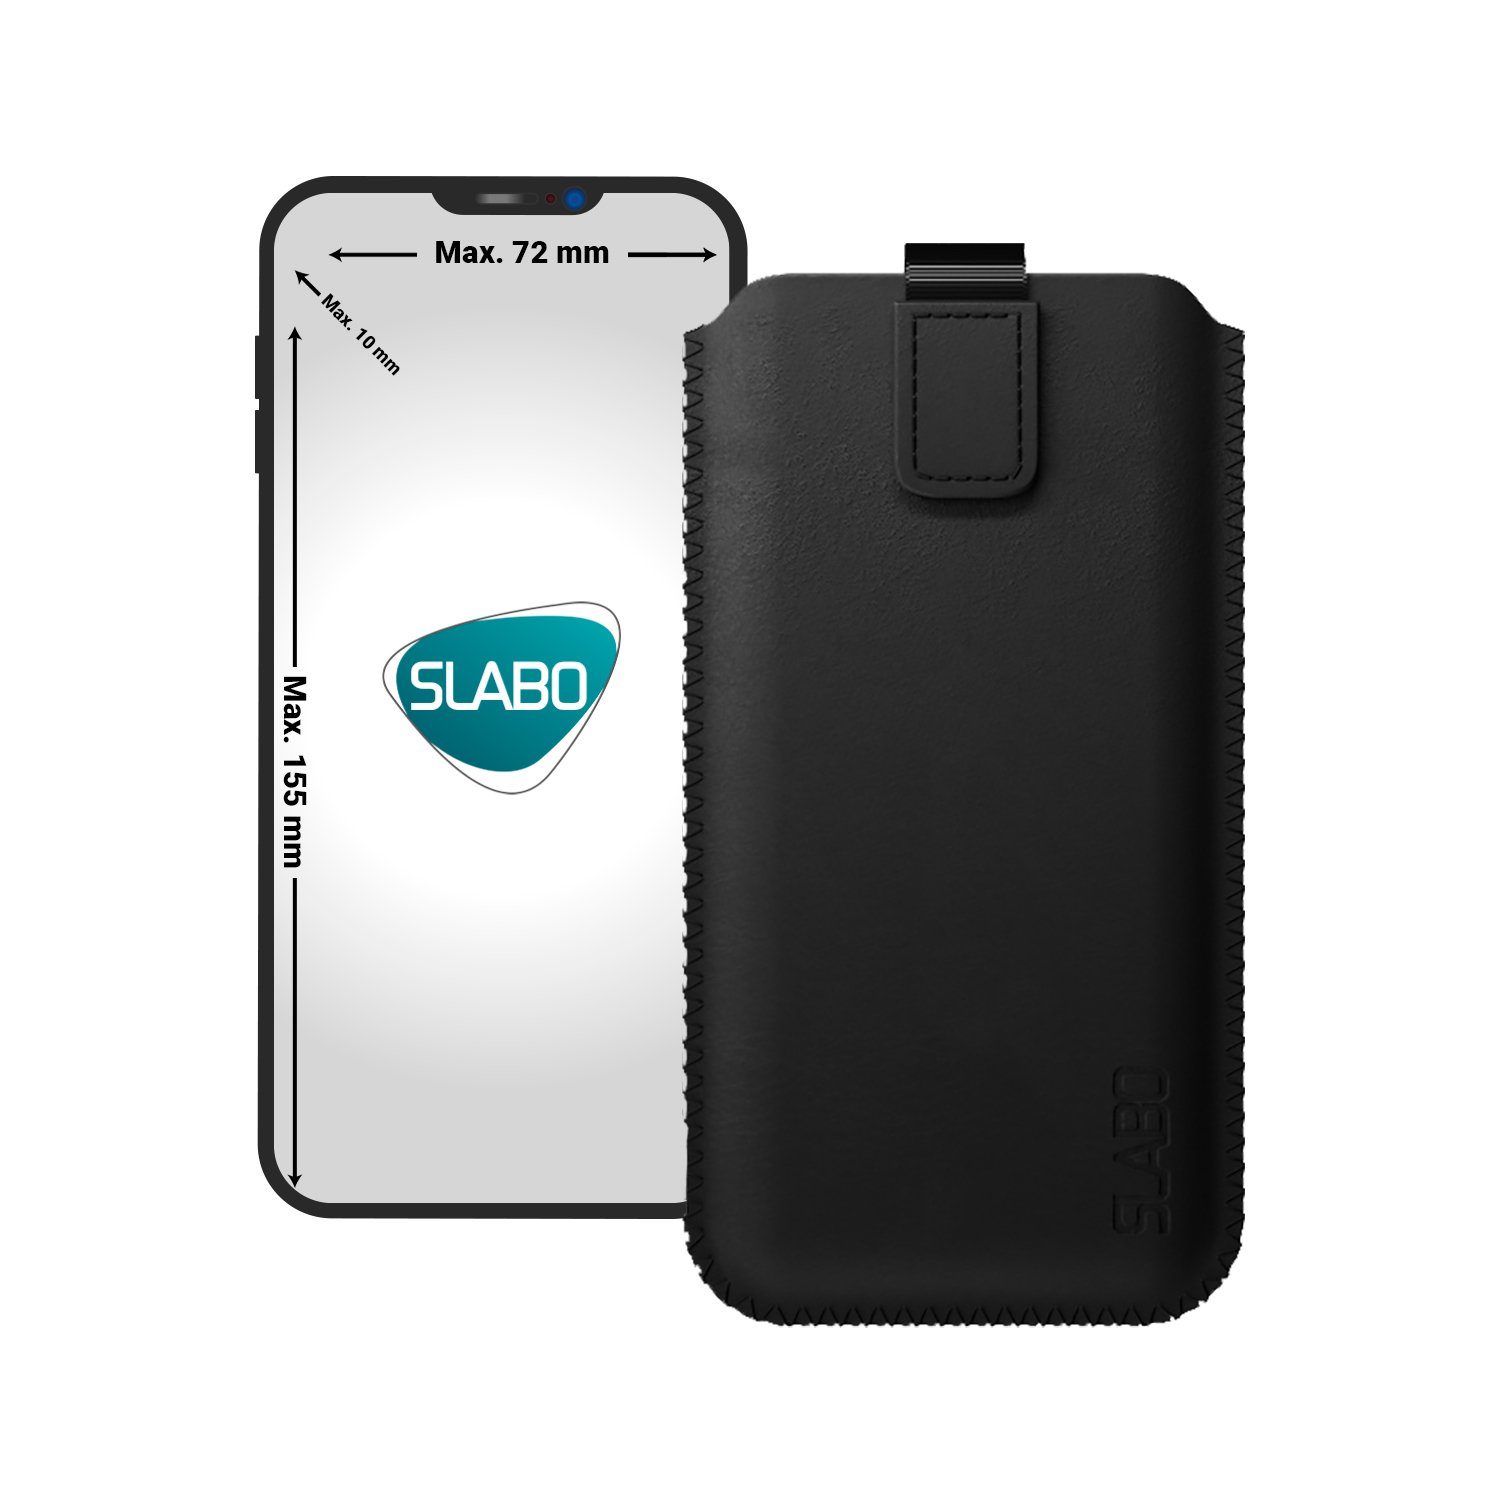 SLABO Handyhülle universelle Schutzhülle für Smartphone (max. 155 x 72 x 10 mm) universal Schutztasche Handyhülle Case mit Magnetverschluss aus Kunstleder - SCHWARZ, BLACK